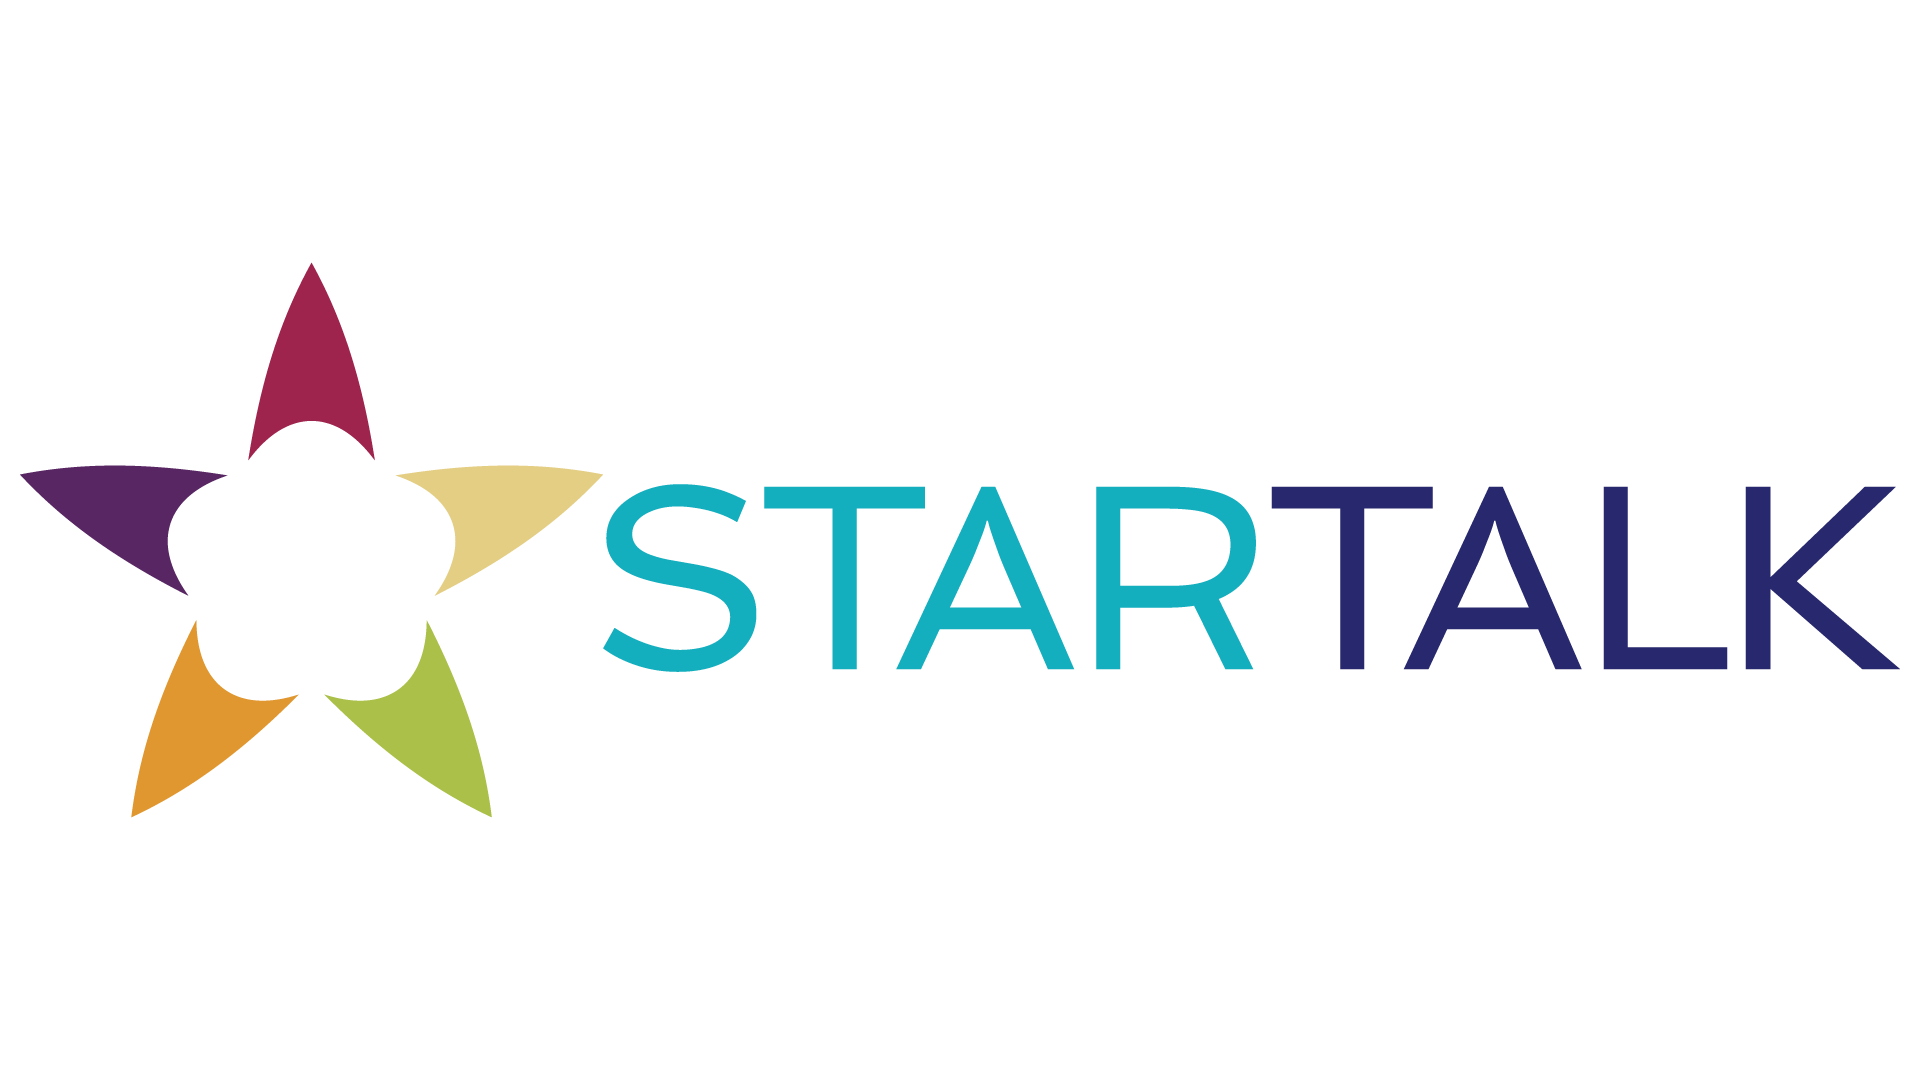 STARTALK-Primary